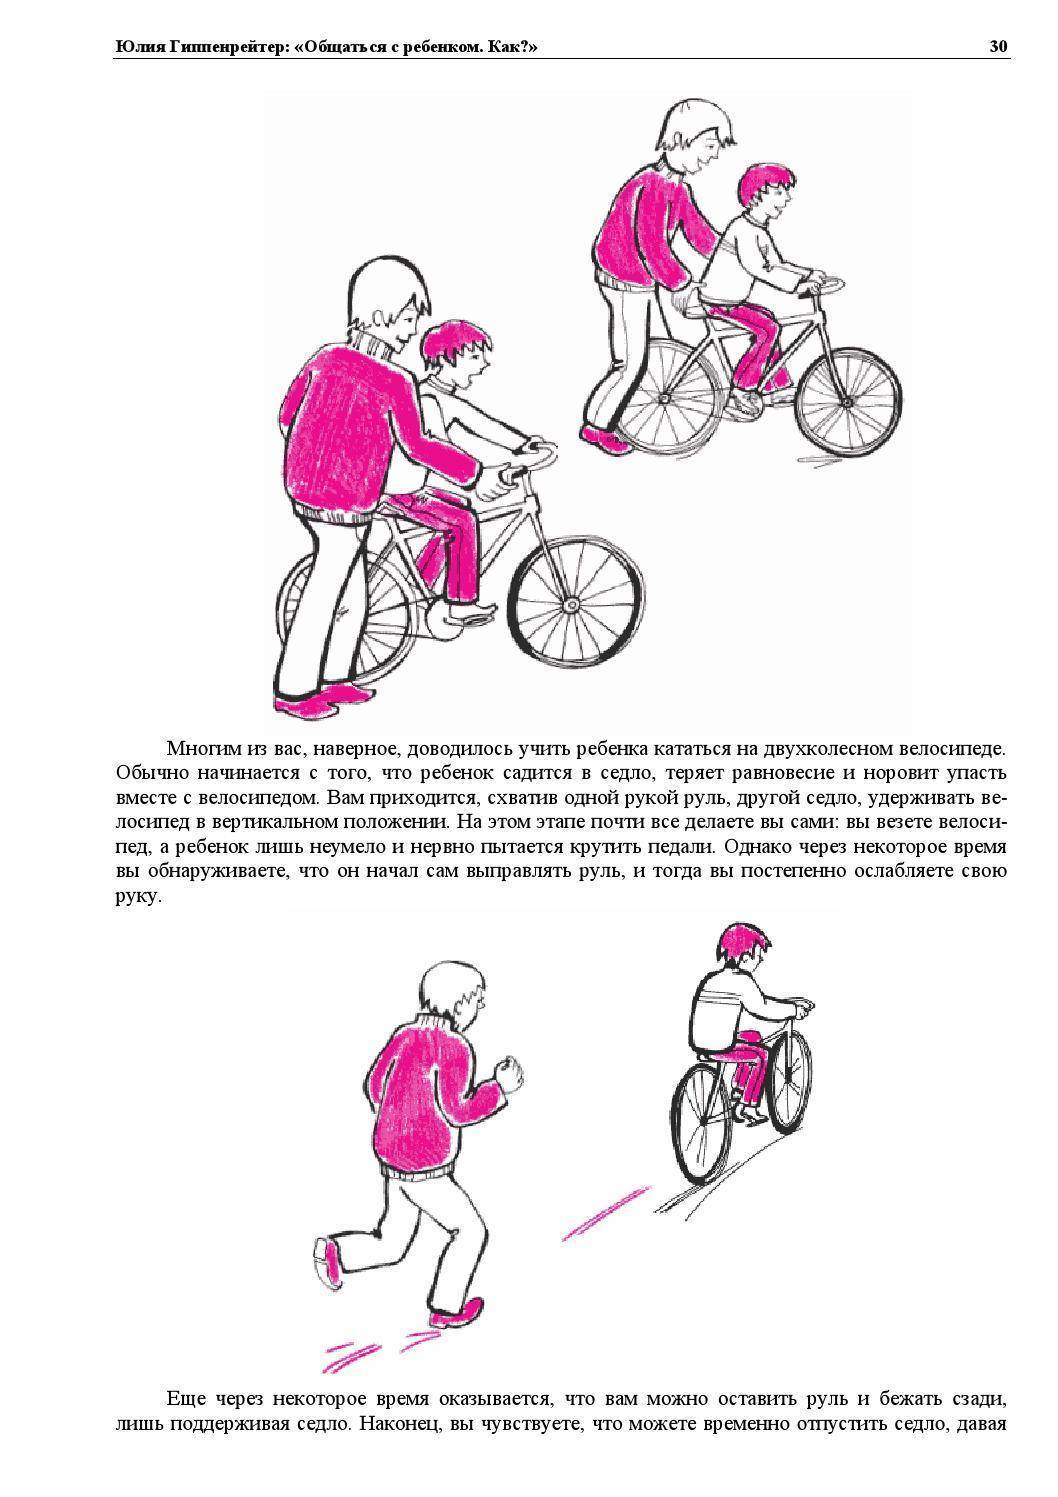 Рекомендации по обучению малыша езде на велосипеде. как научить ребенка ездить на велосипеде (трехколесном и двухколесном). основные правила, методики обучения и важные нюансы, которые помогут малышу быстрее овладеть транспортом